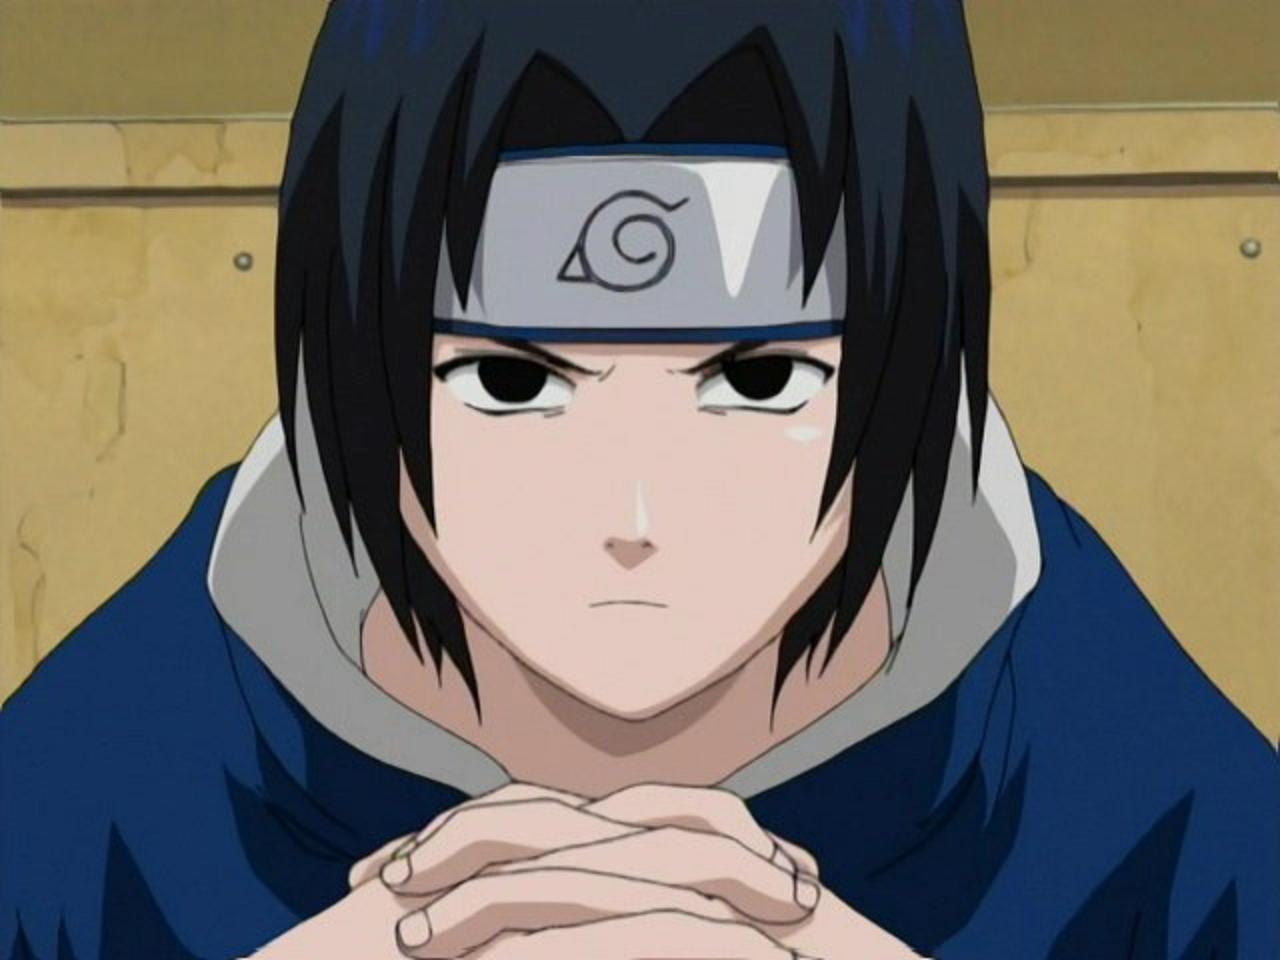 2. "Sasuke Uchiha" from Naruto - wide 9